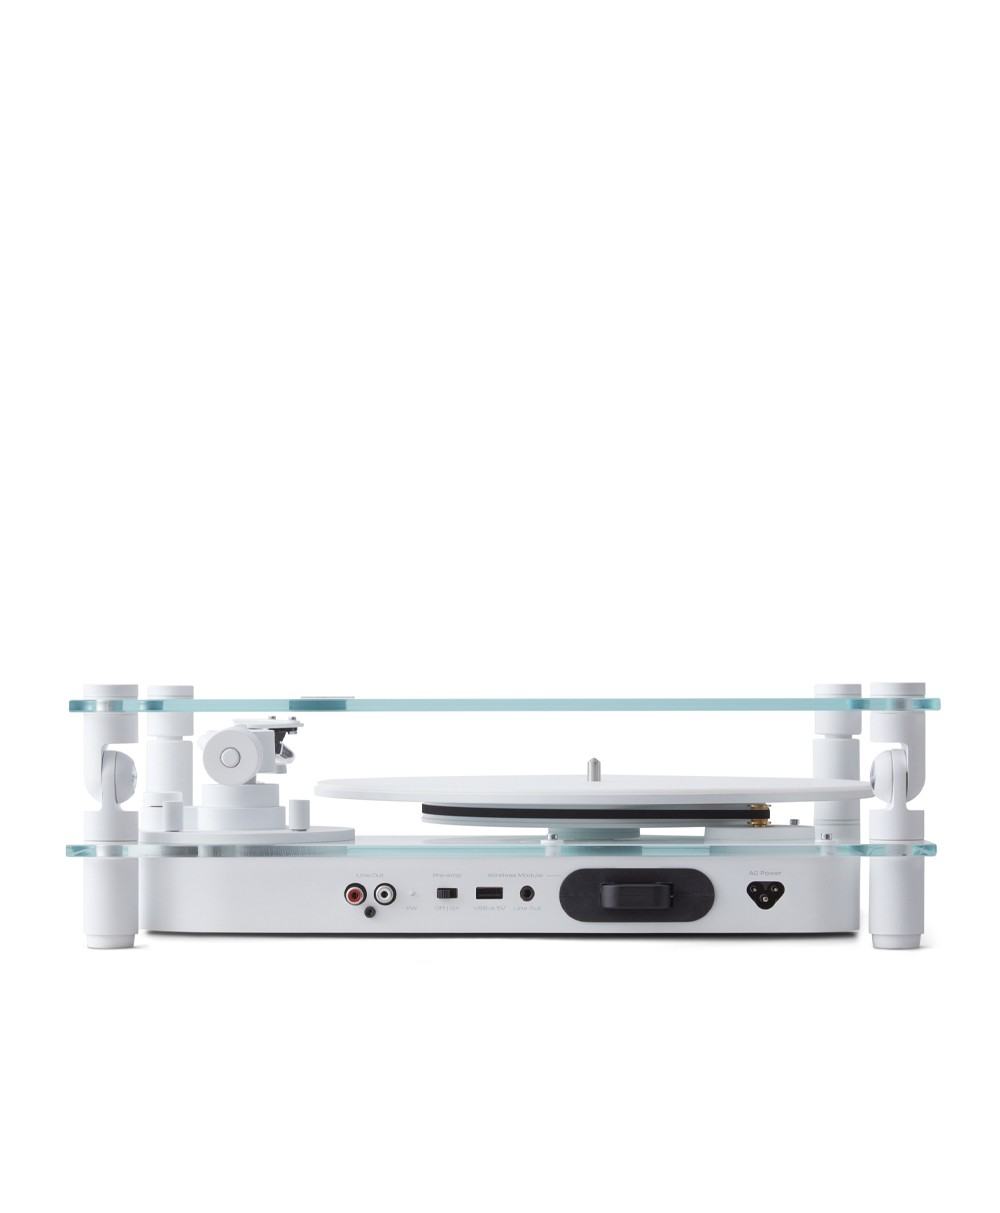 Hier ist ein Produktfoto des Transparent Turntables in der Farbe White von der Marke Transparent Sound zu sehen – im Onlineshop RAUM concept store